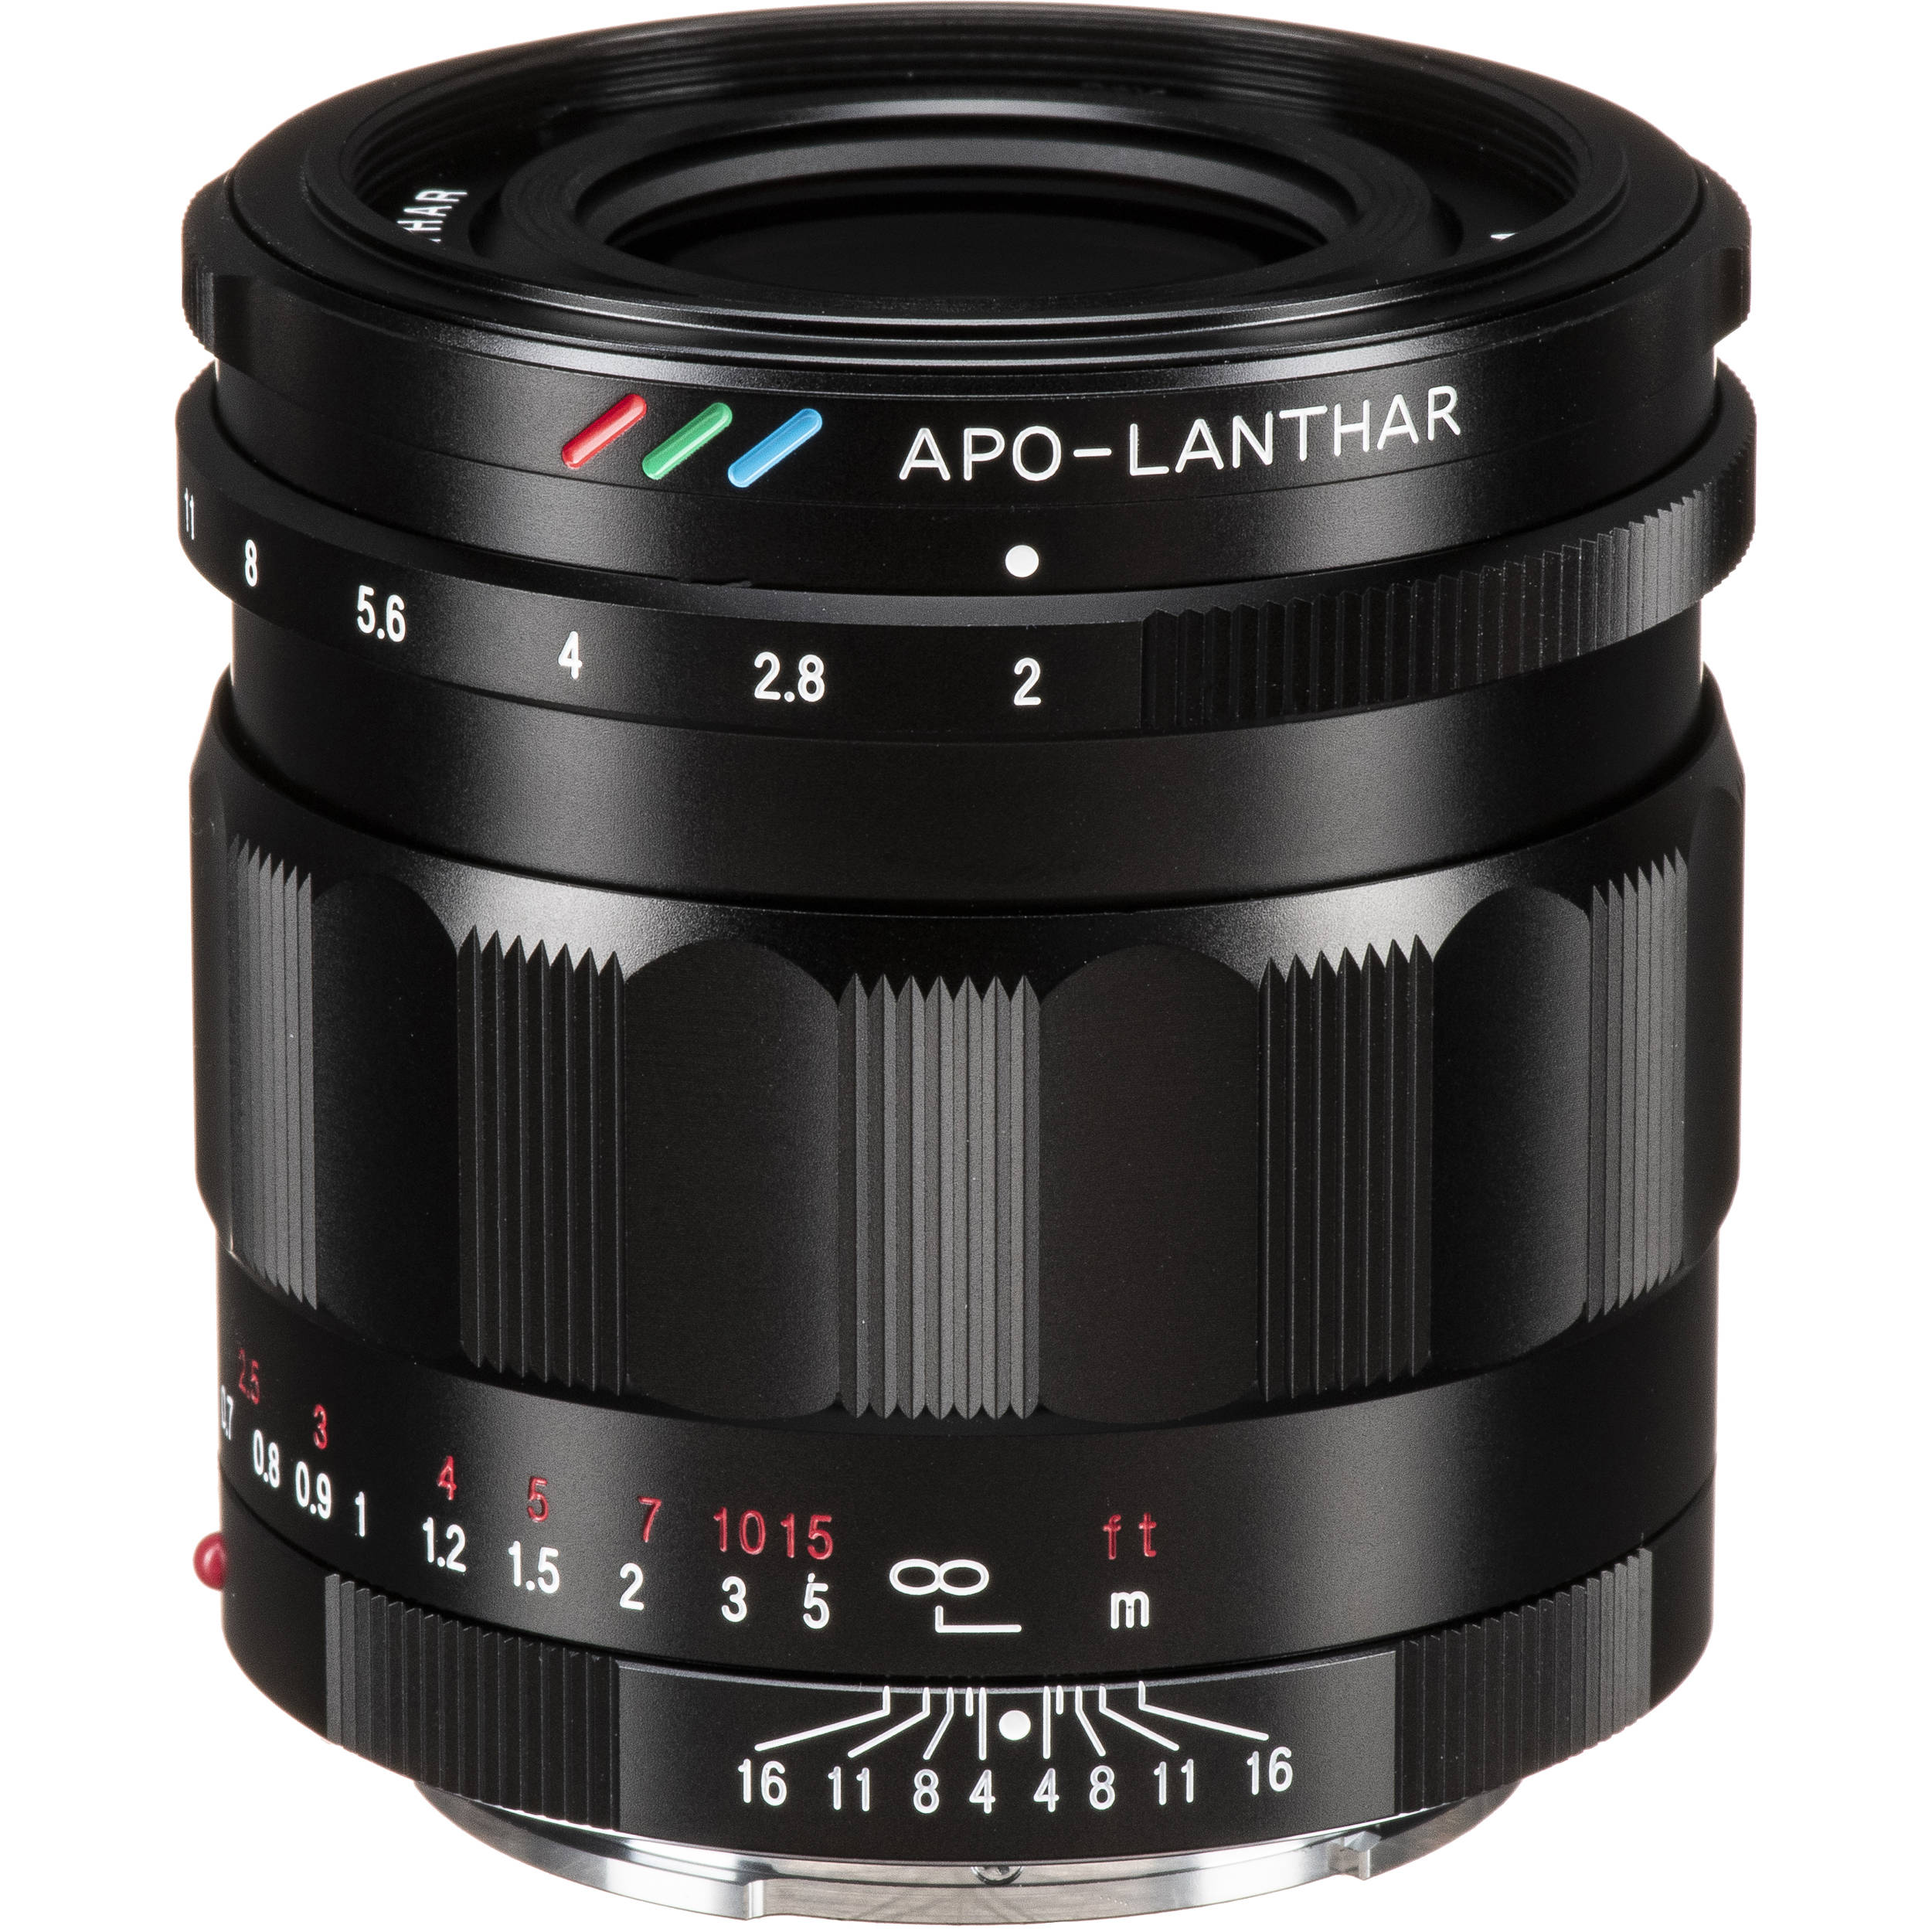 TVignette pour Voigtlander APO-LANTHAR 50mm f/2 Aspherical Lens pour Sony E